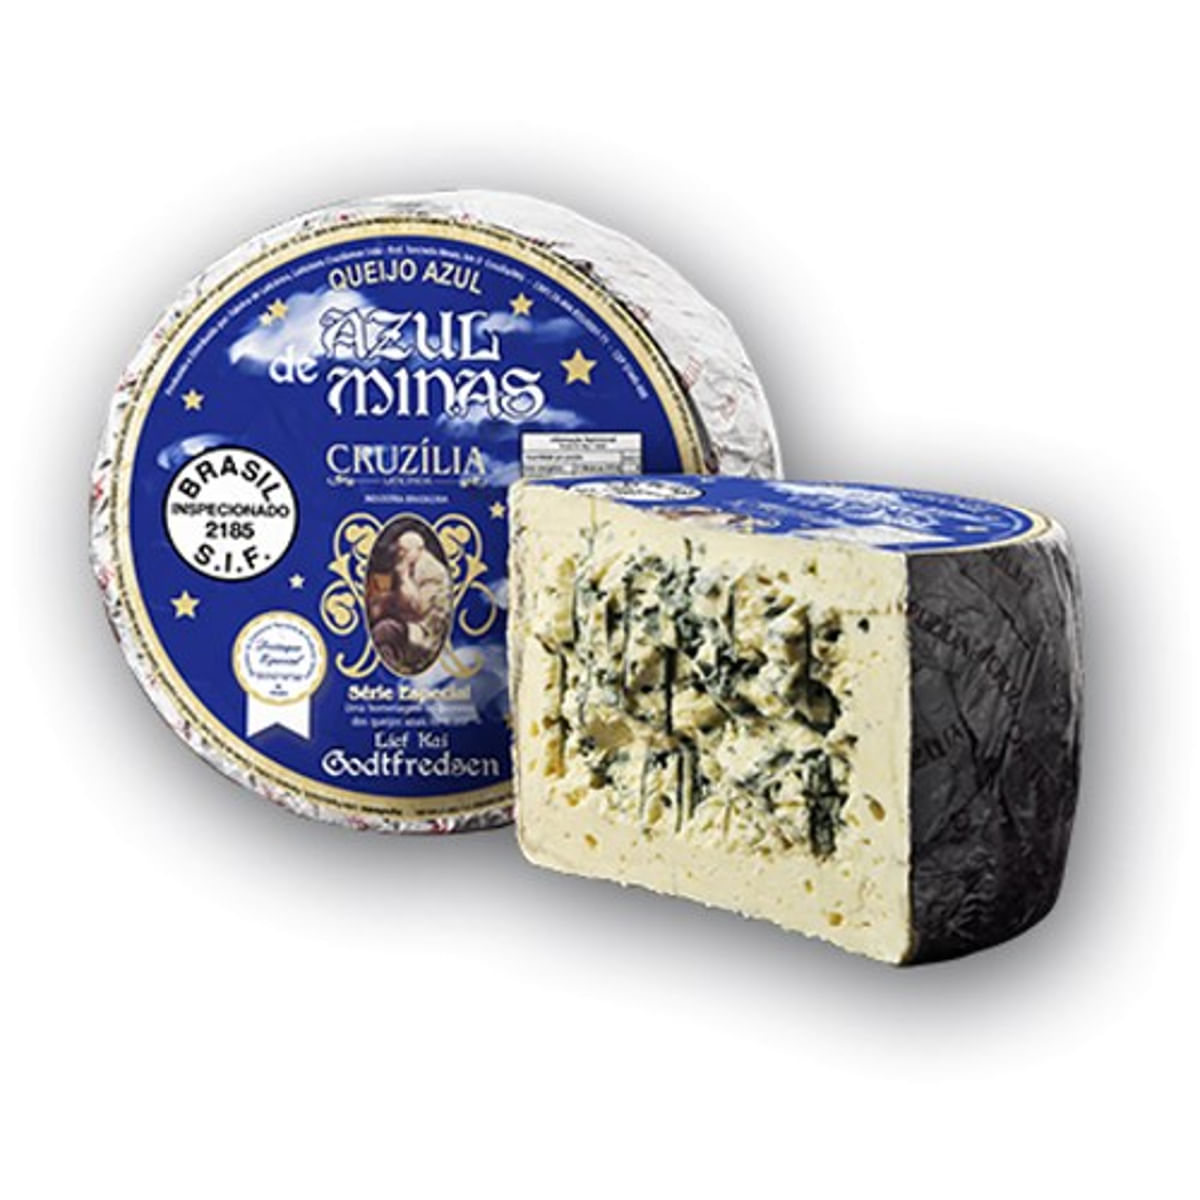 queijo-azul-de-minas-cruzilia-kg-1.jpg